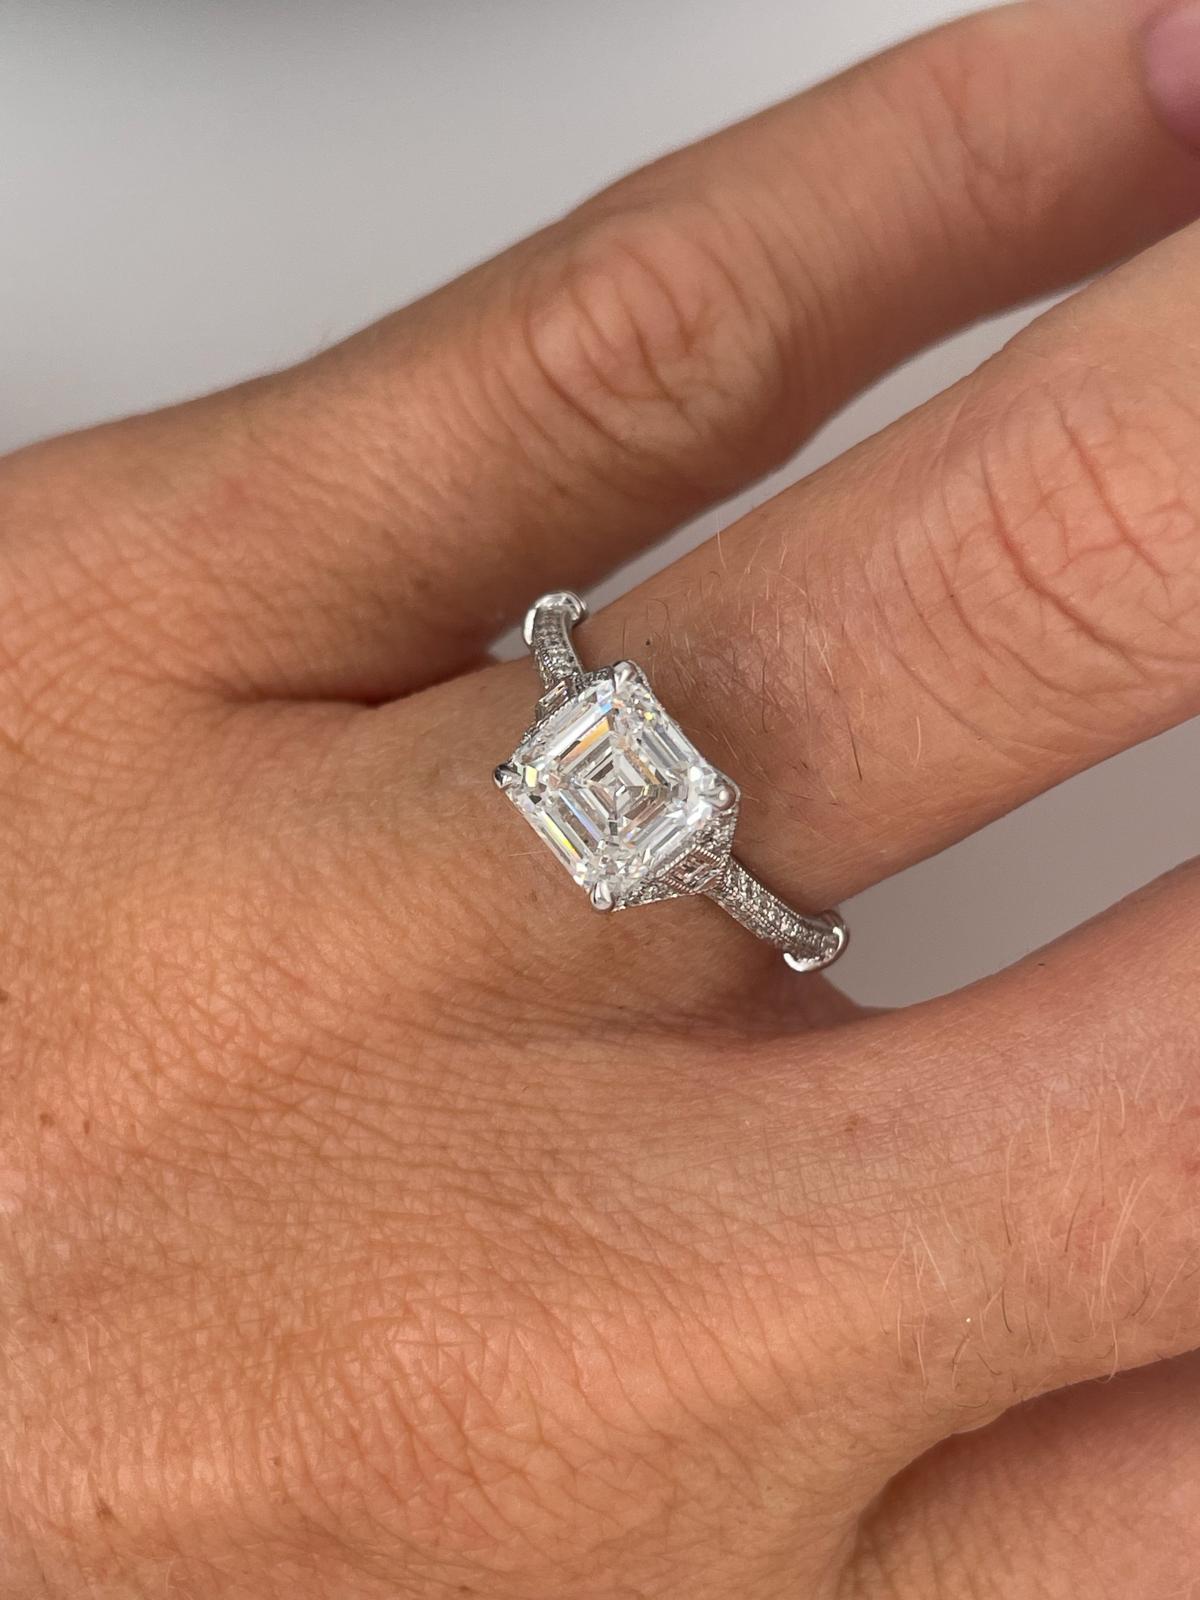 For Sale:  2ct Art Deco asscher cut diamond ring 9